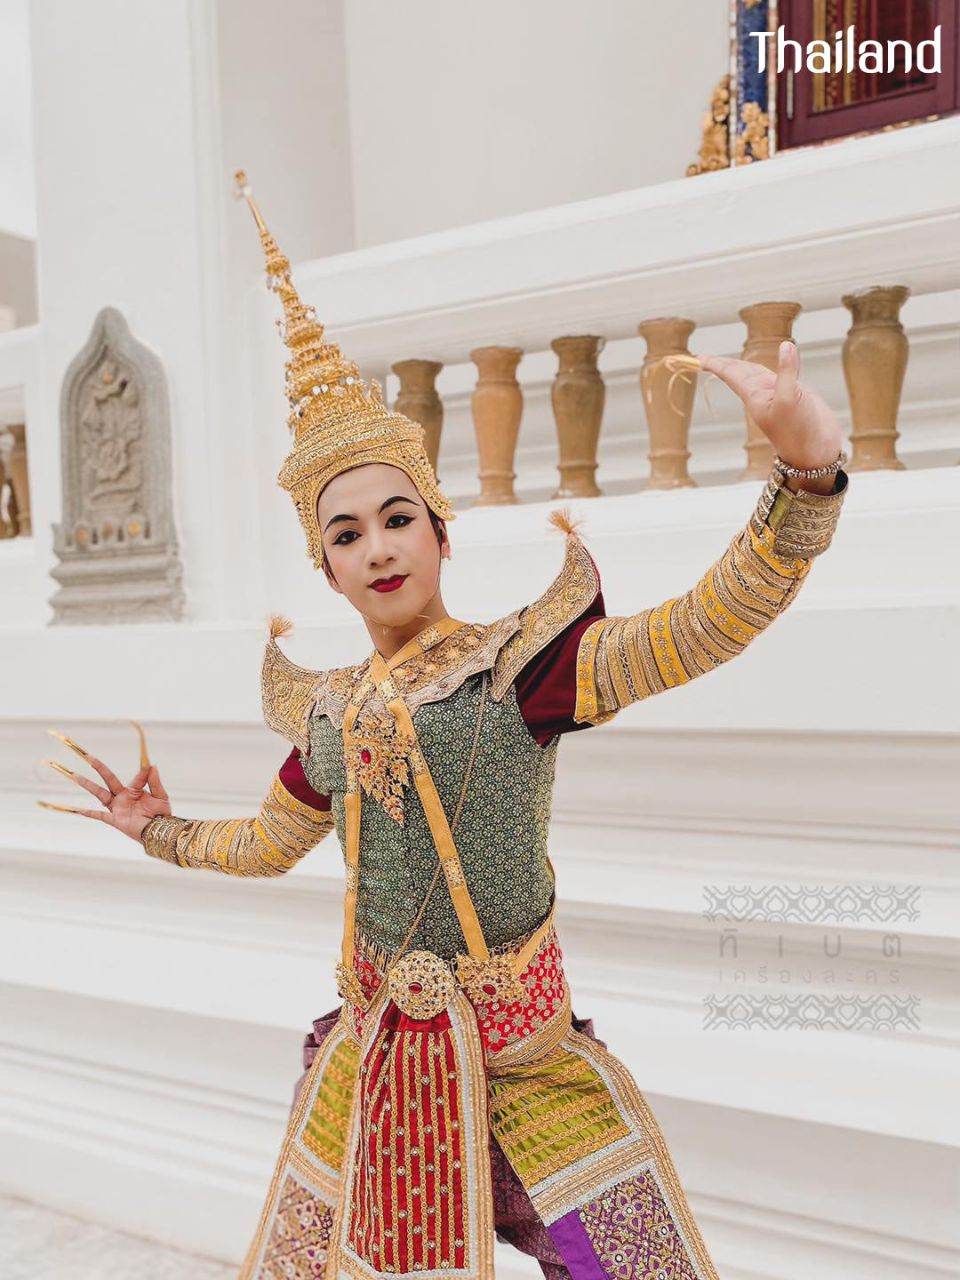 THAILAND 🇹🇭 | Thai Dance, Thai Performance Art: นาฏศิลป์ไทย